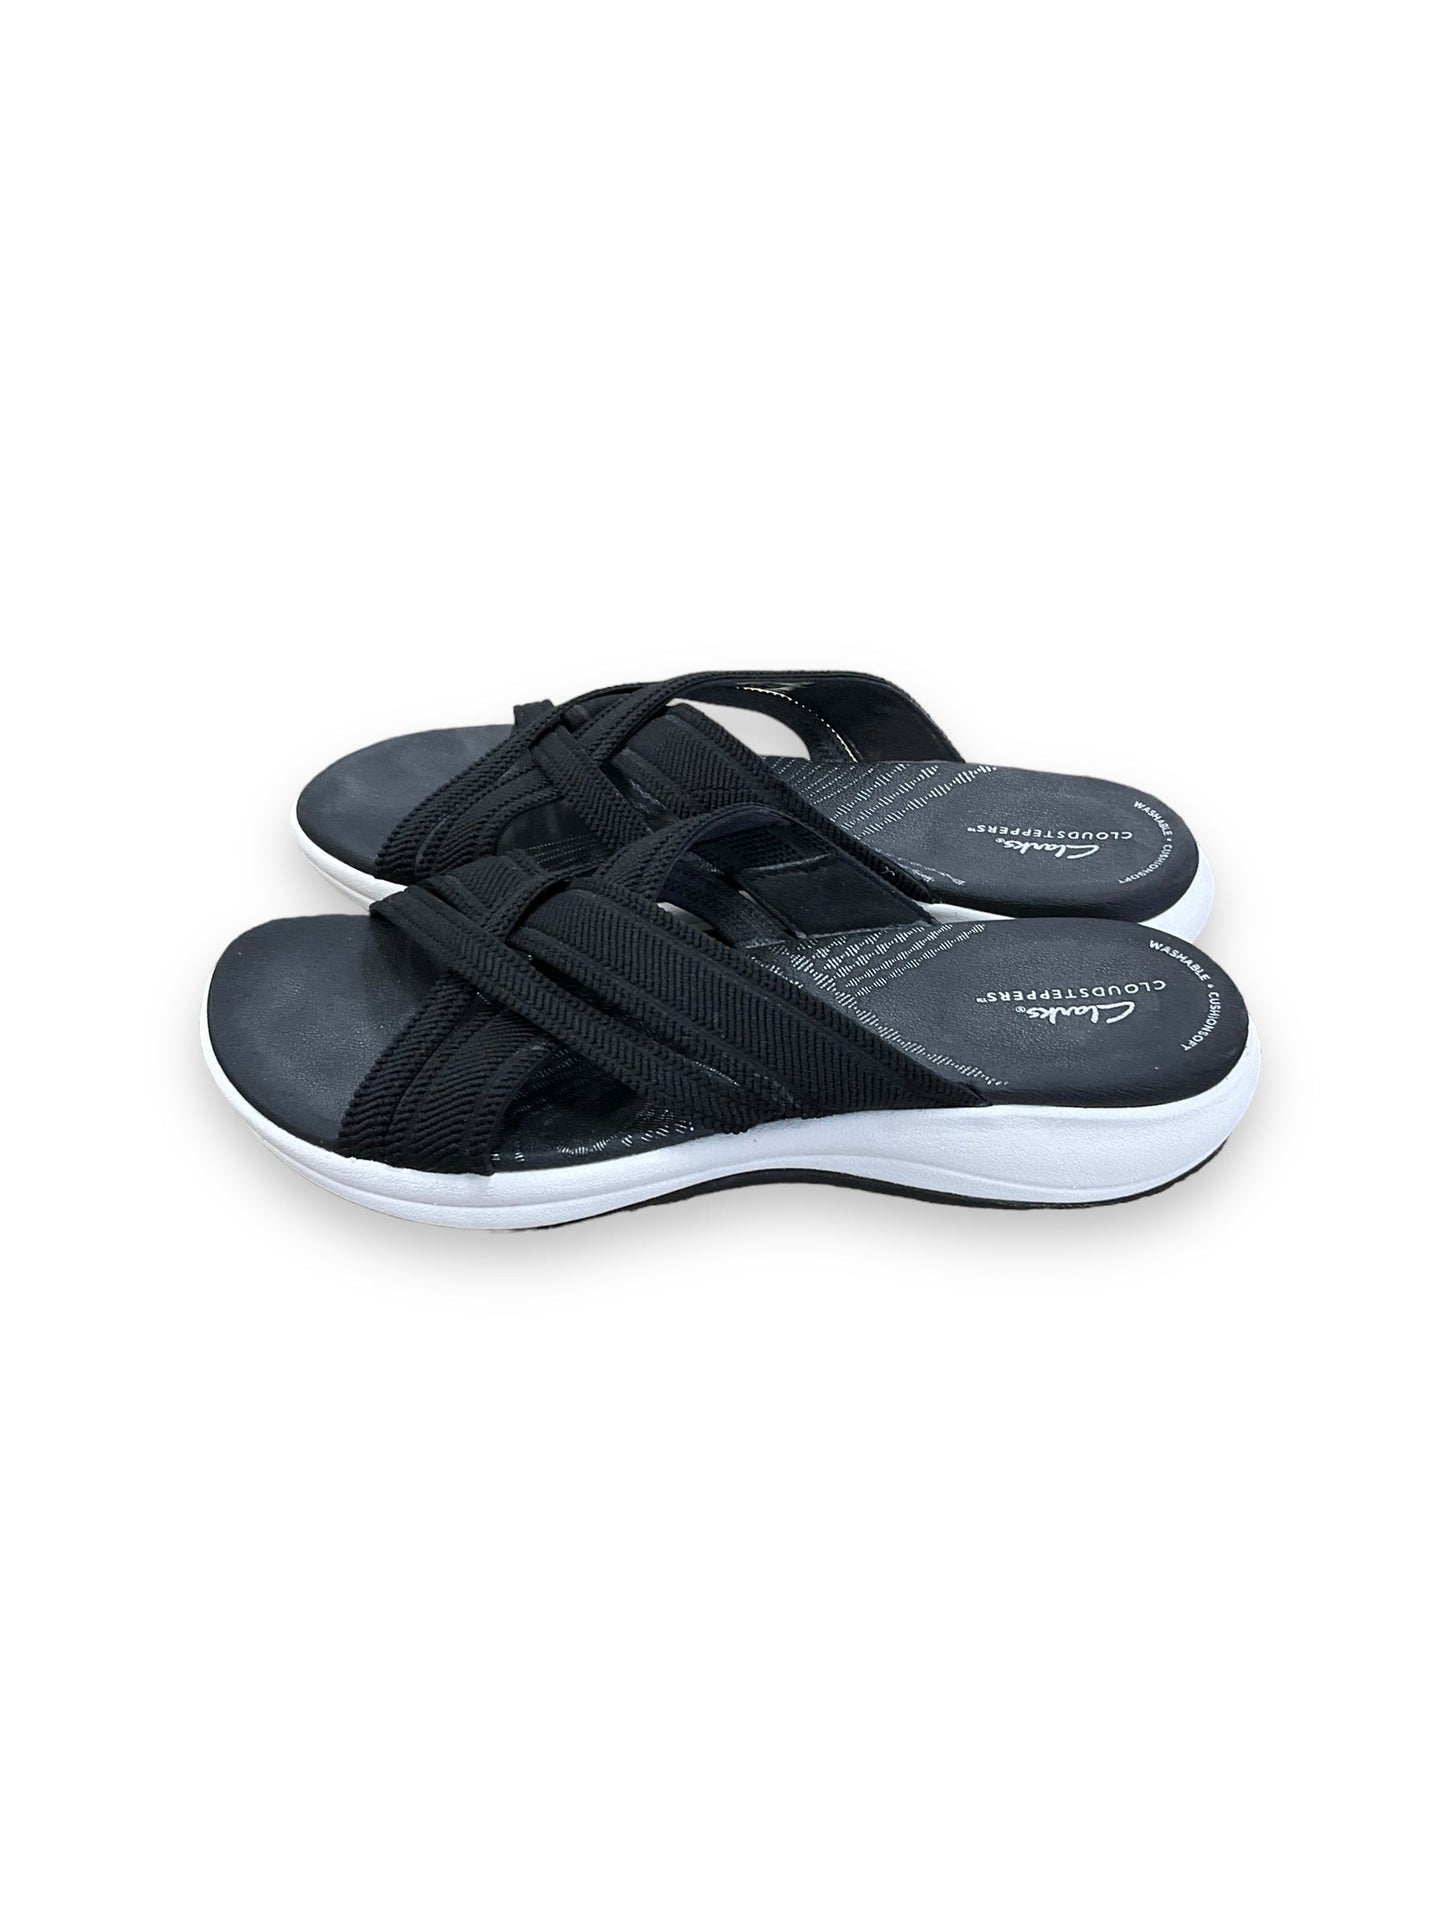 Black Sandals Flats Clarks, Size 8